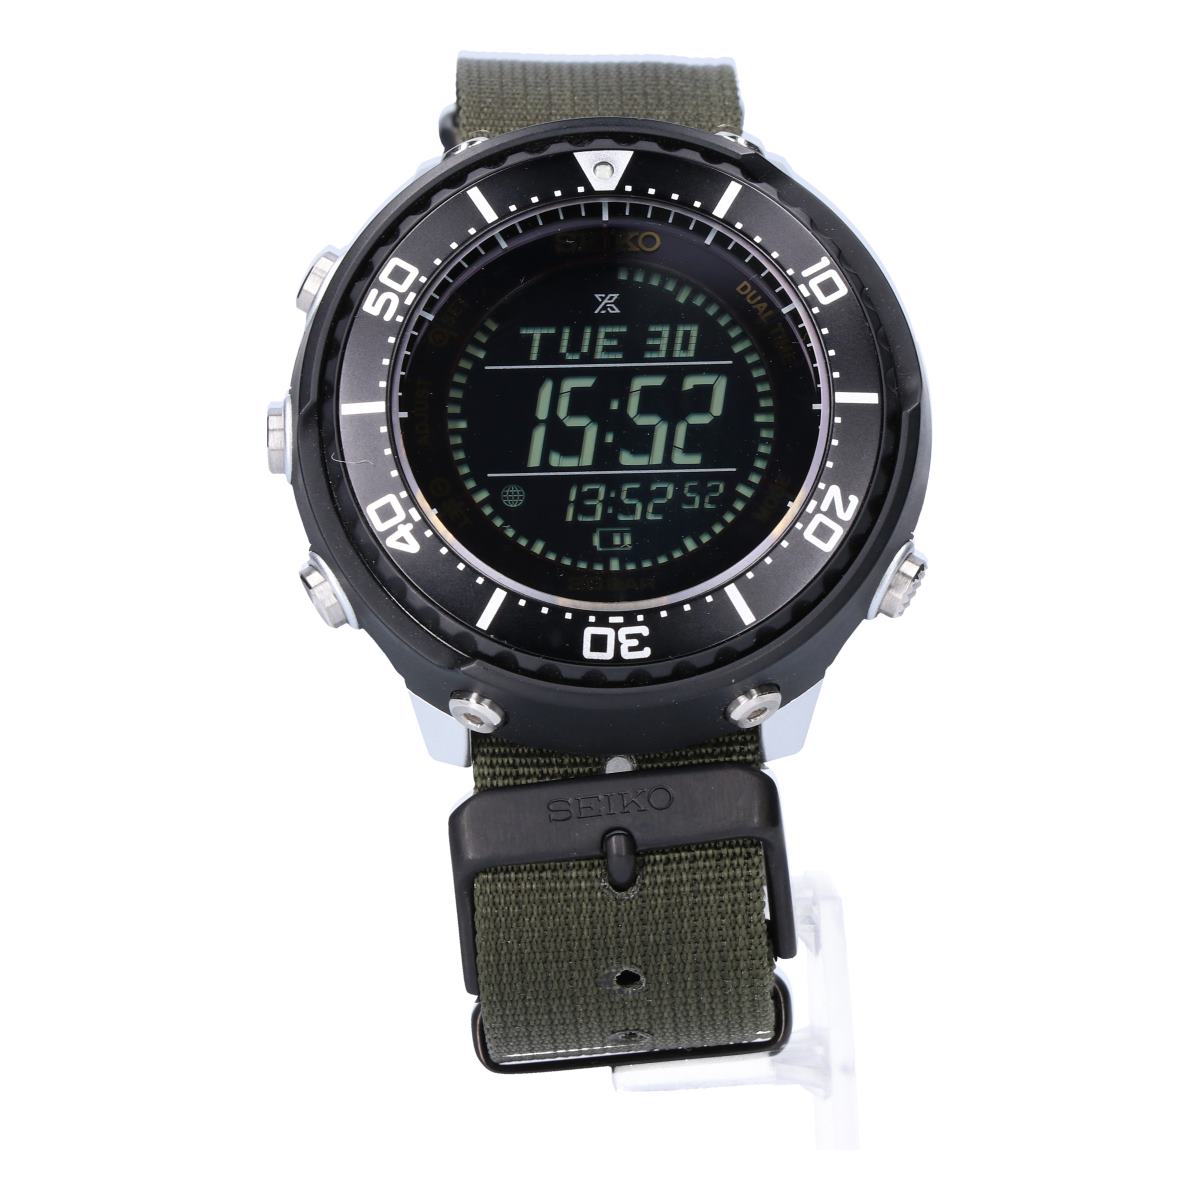 セイコーの600本限定 SBEP007 S802-00A0 JOURNAL STANDARD別注  プロスペックス フィールドマスター ソーラー 腕時計の買取実績です。